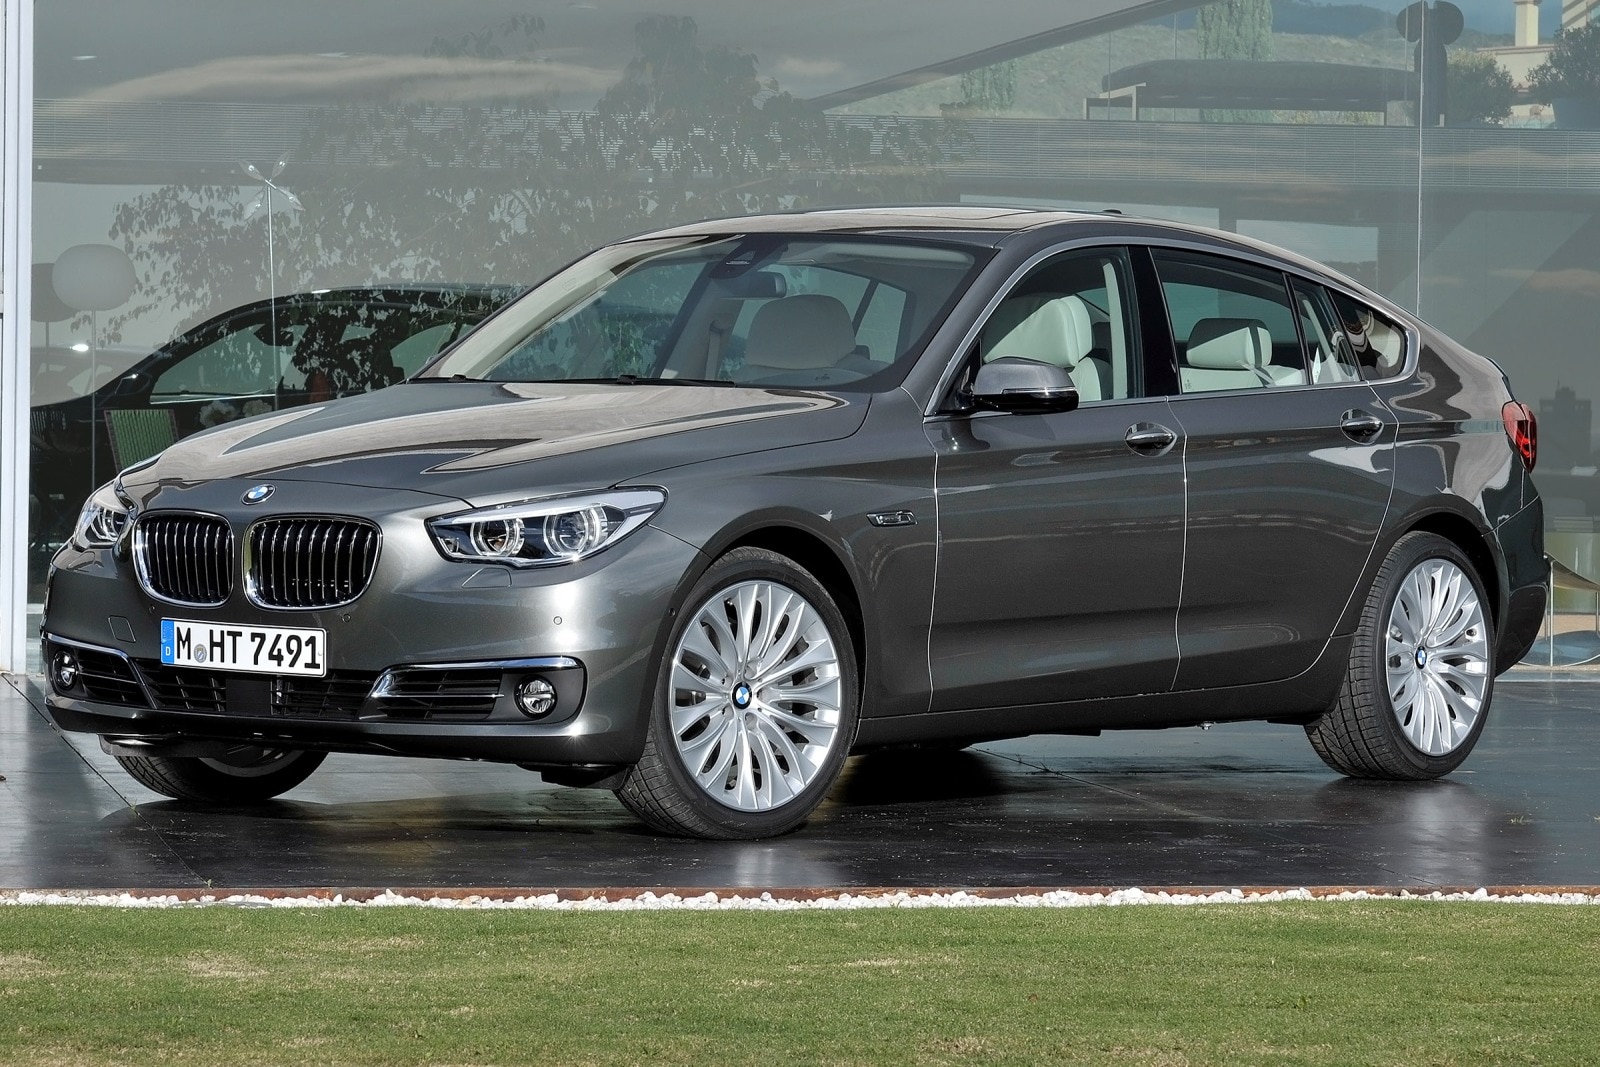 2014 BMW 5 Series Gran Turismo Review & Ratings | Edmunds